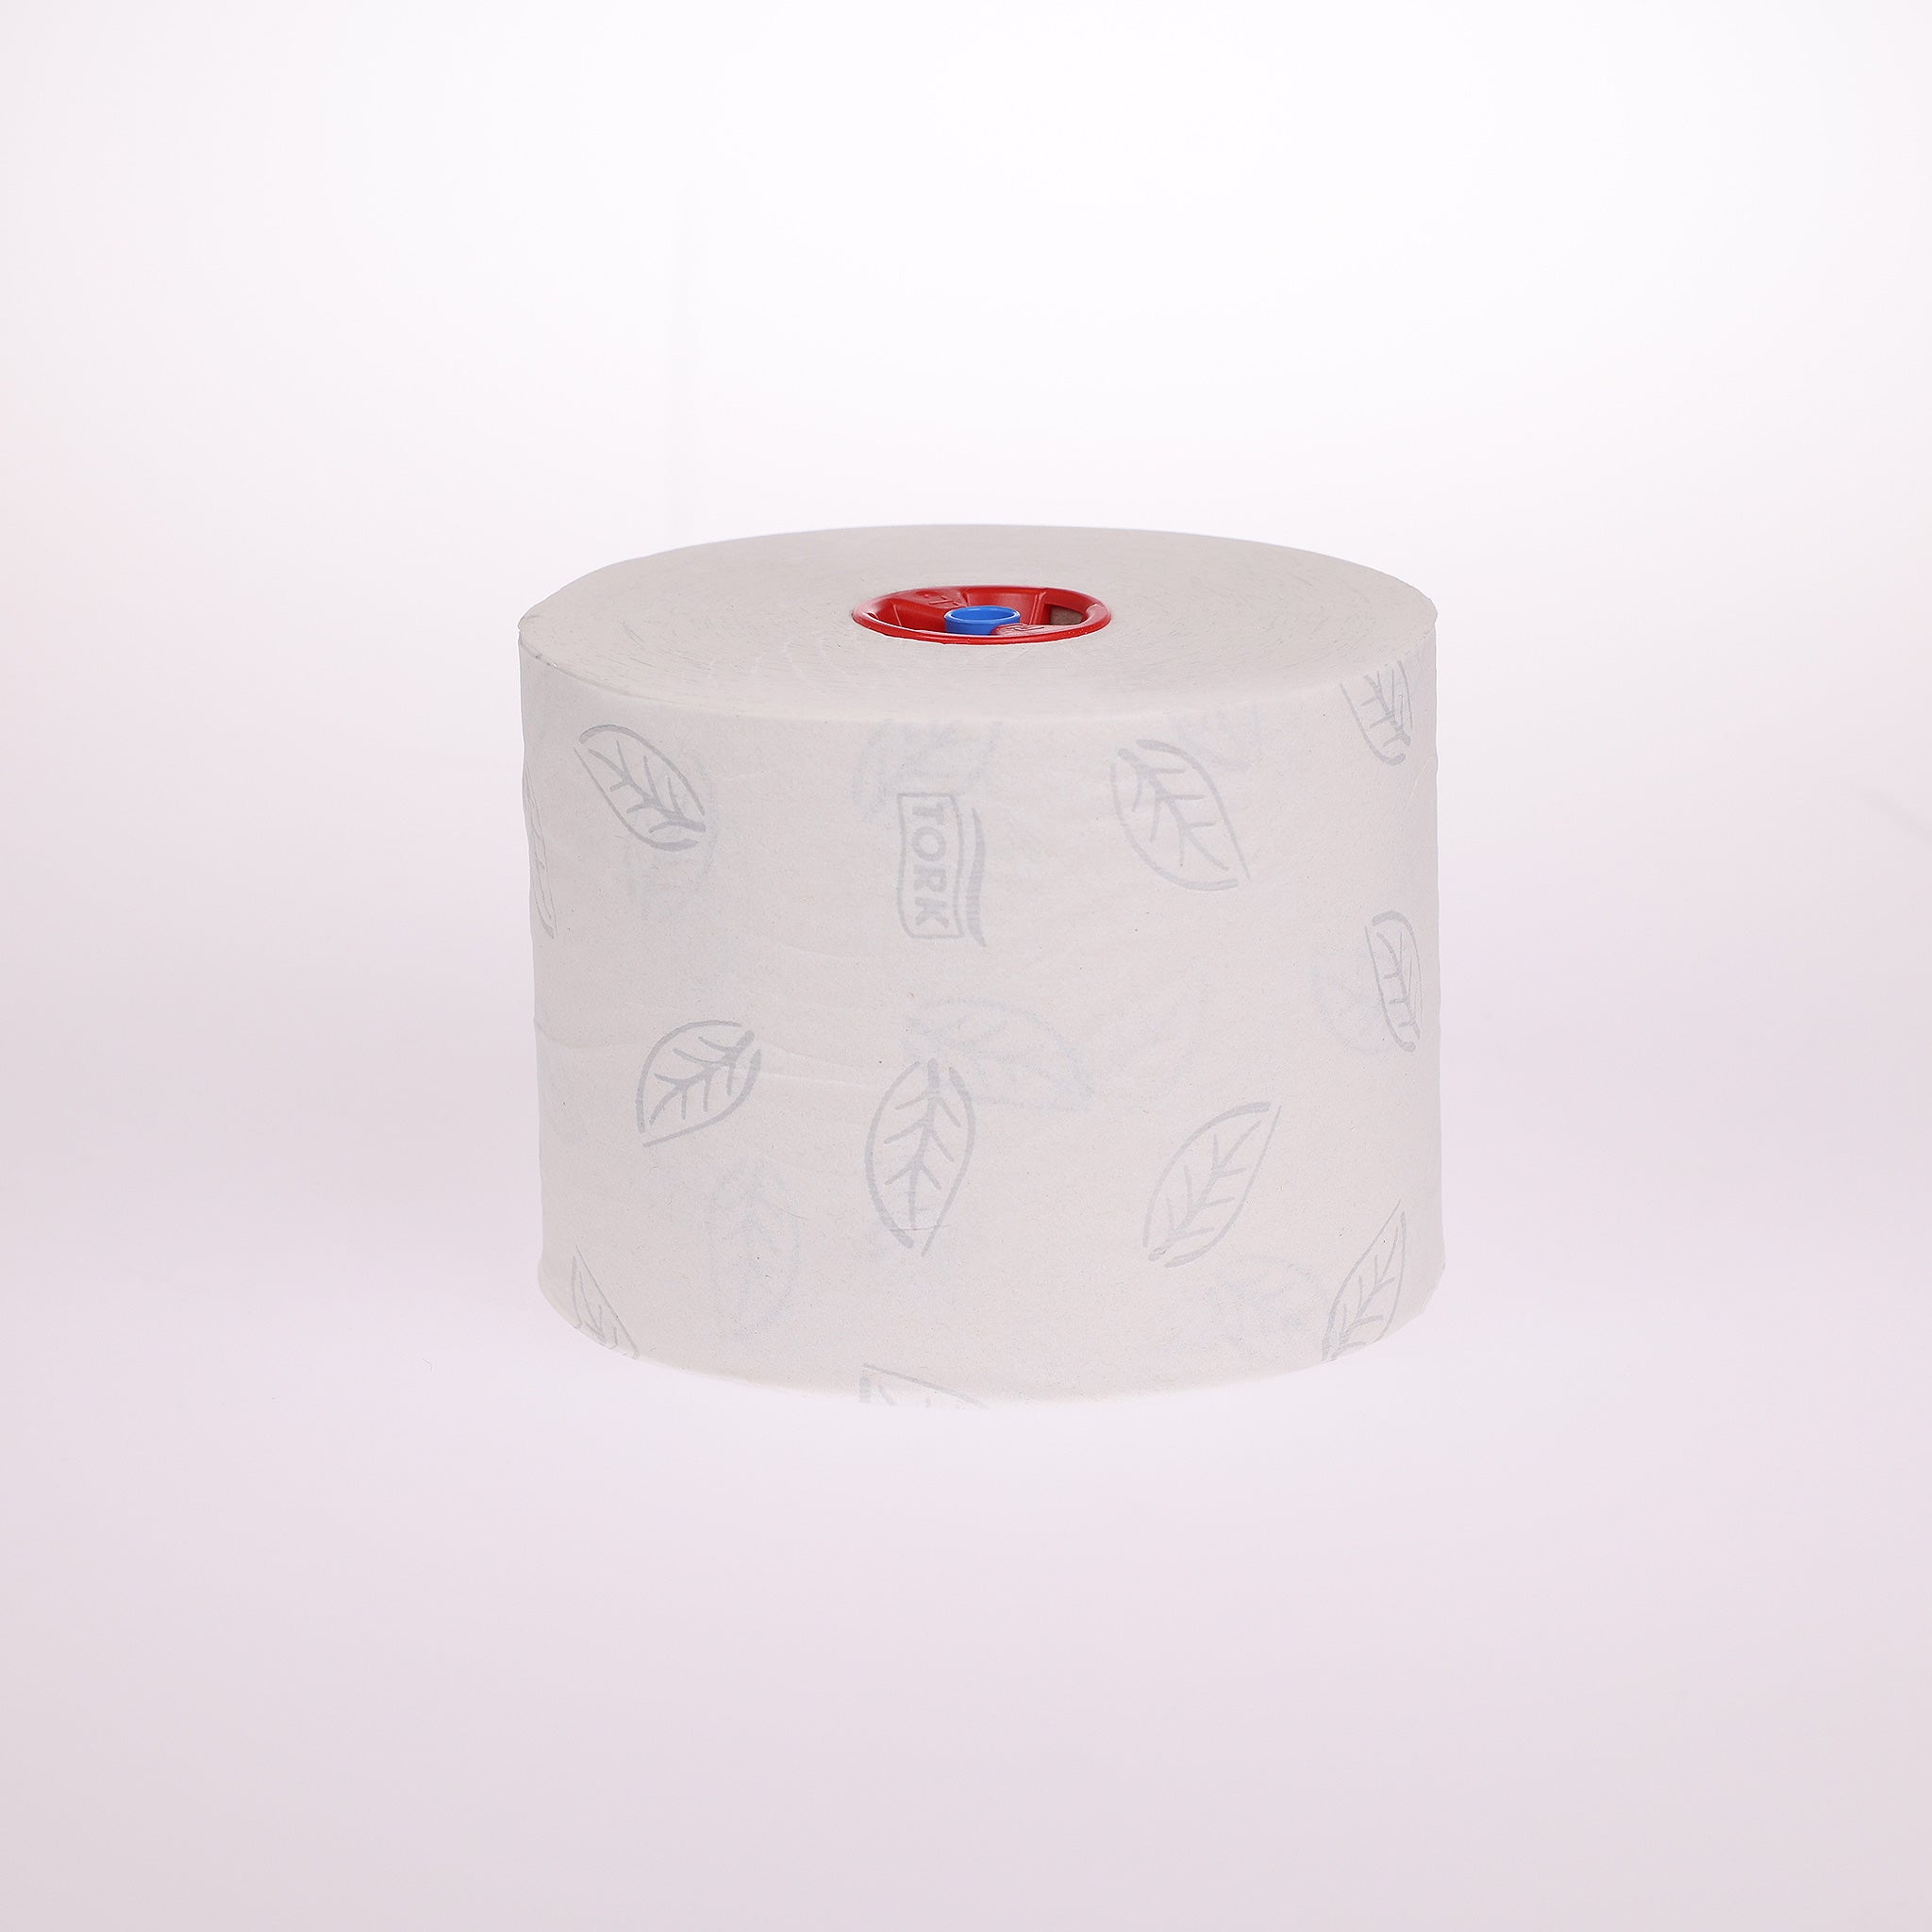 2-lags toiletpapir til Tork T6 dispensere. Toiletpapiret er i en blød kvalitet, der sikrer en høj absorberingsevne - Cares.dk